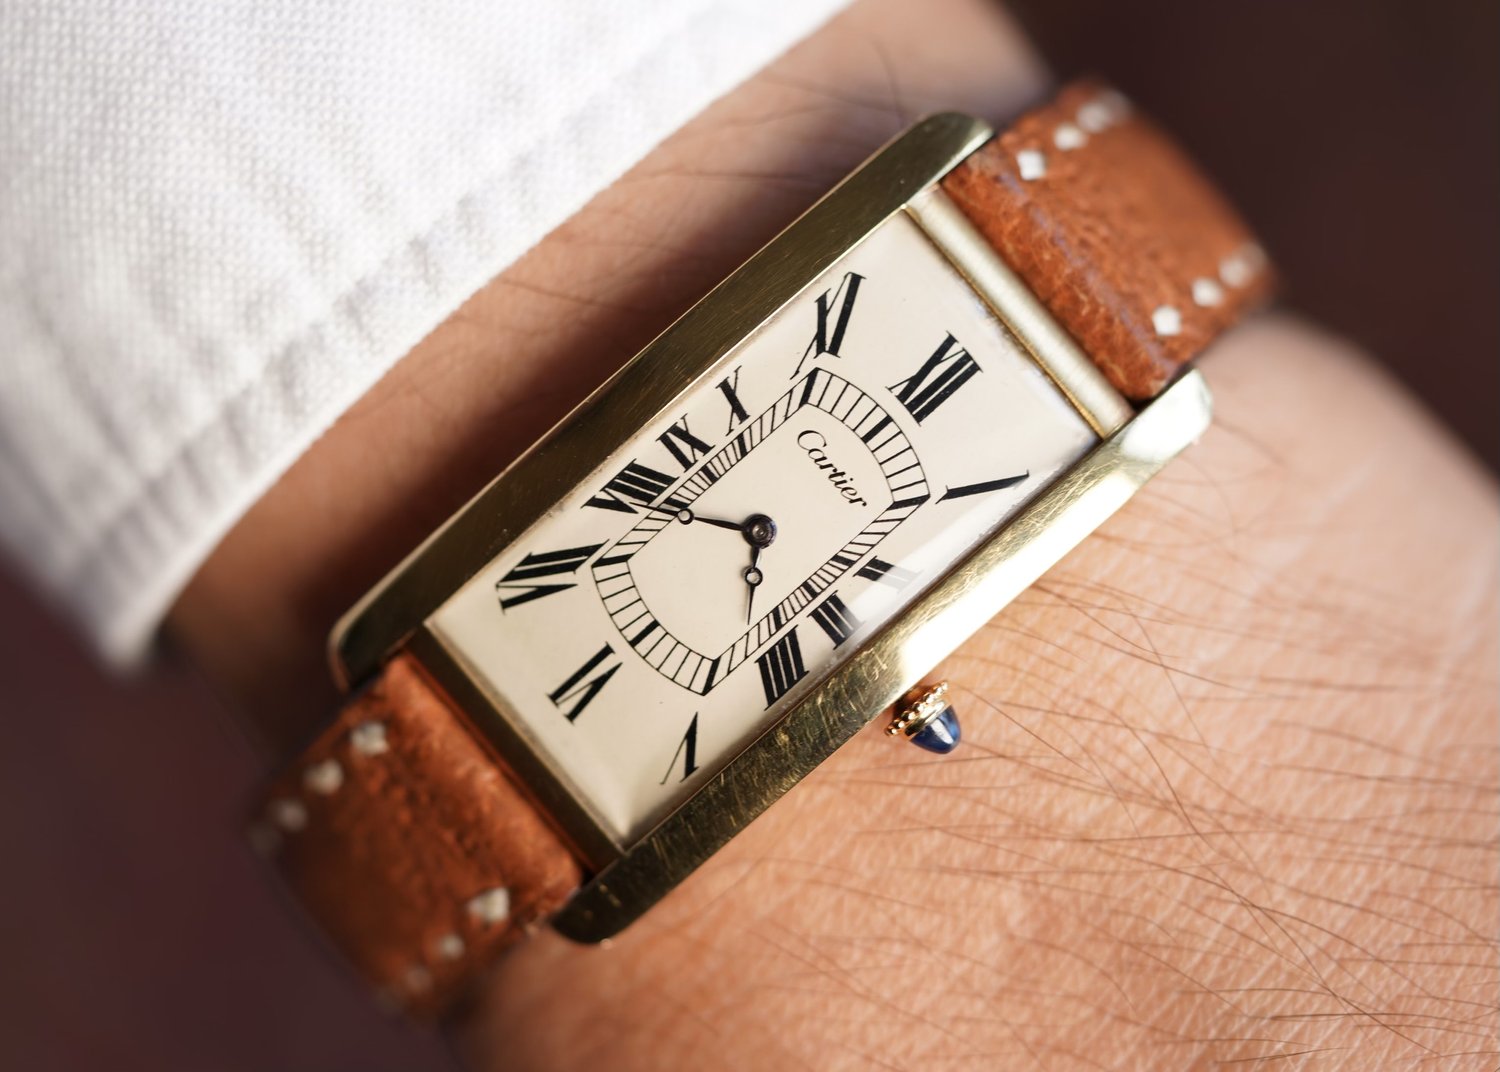 1968 1960's Cartier Tank Louis Watch For Sale - Unisex Vintage